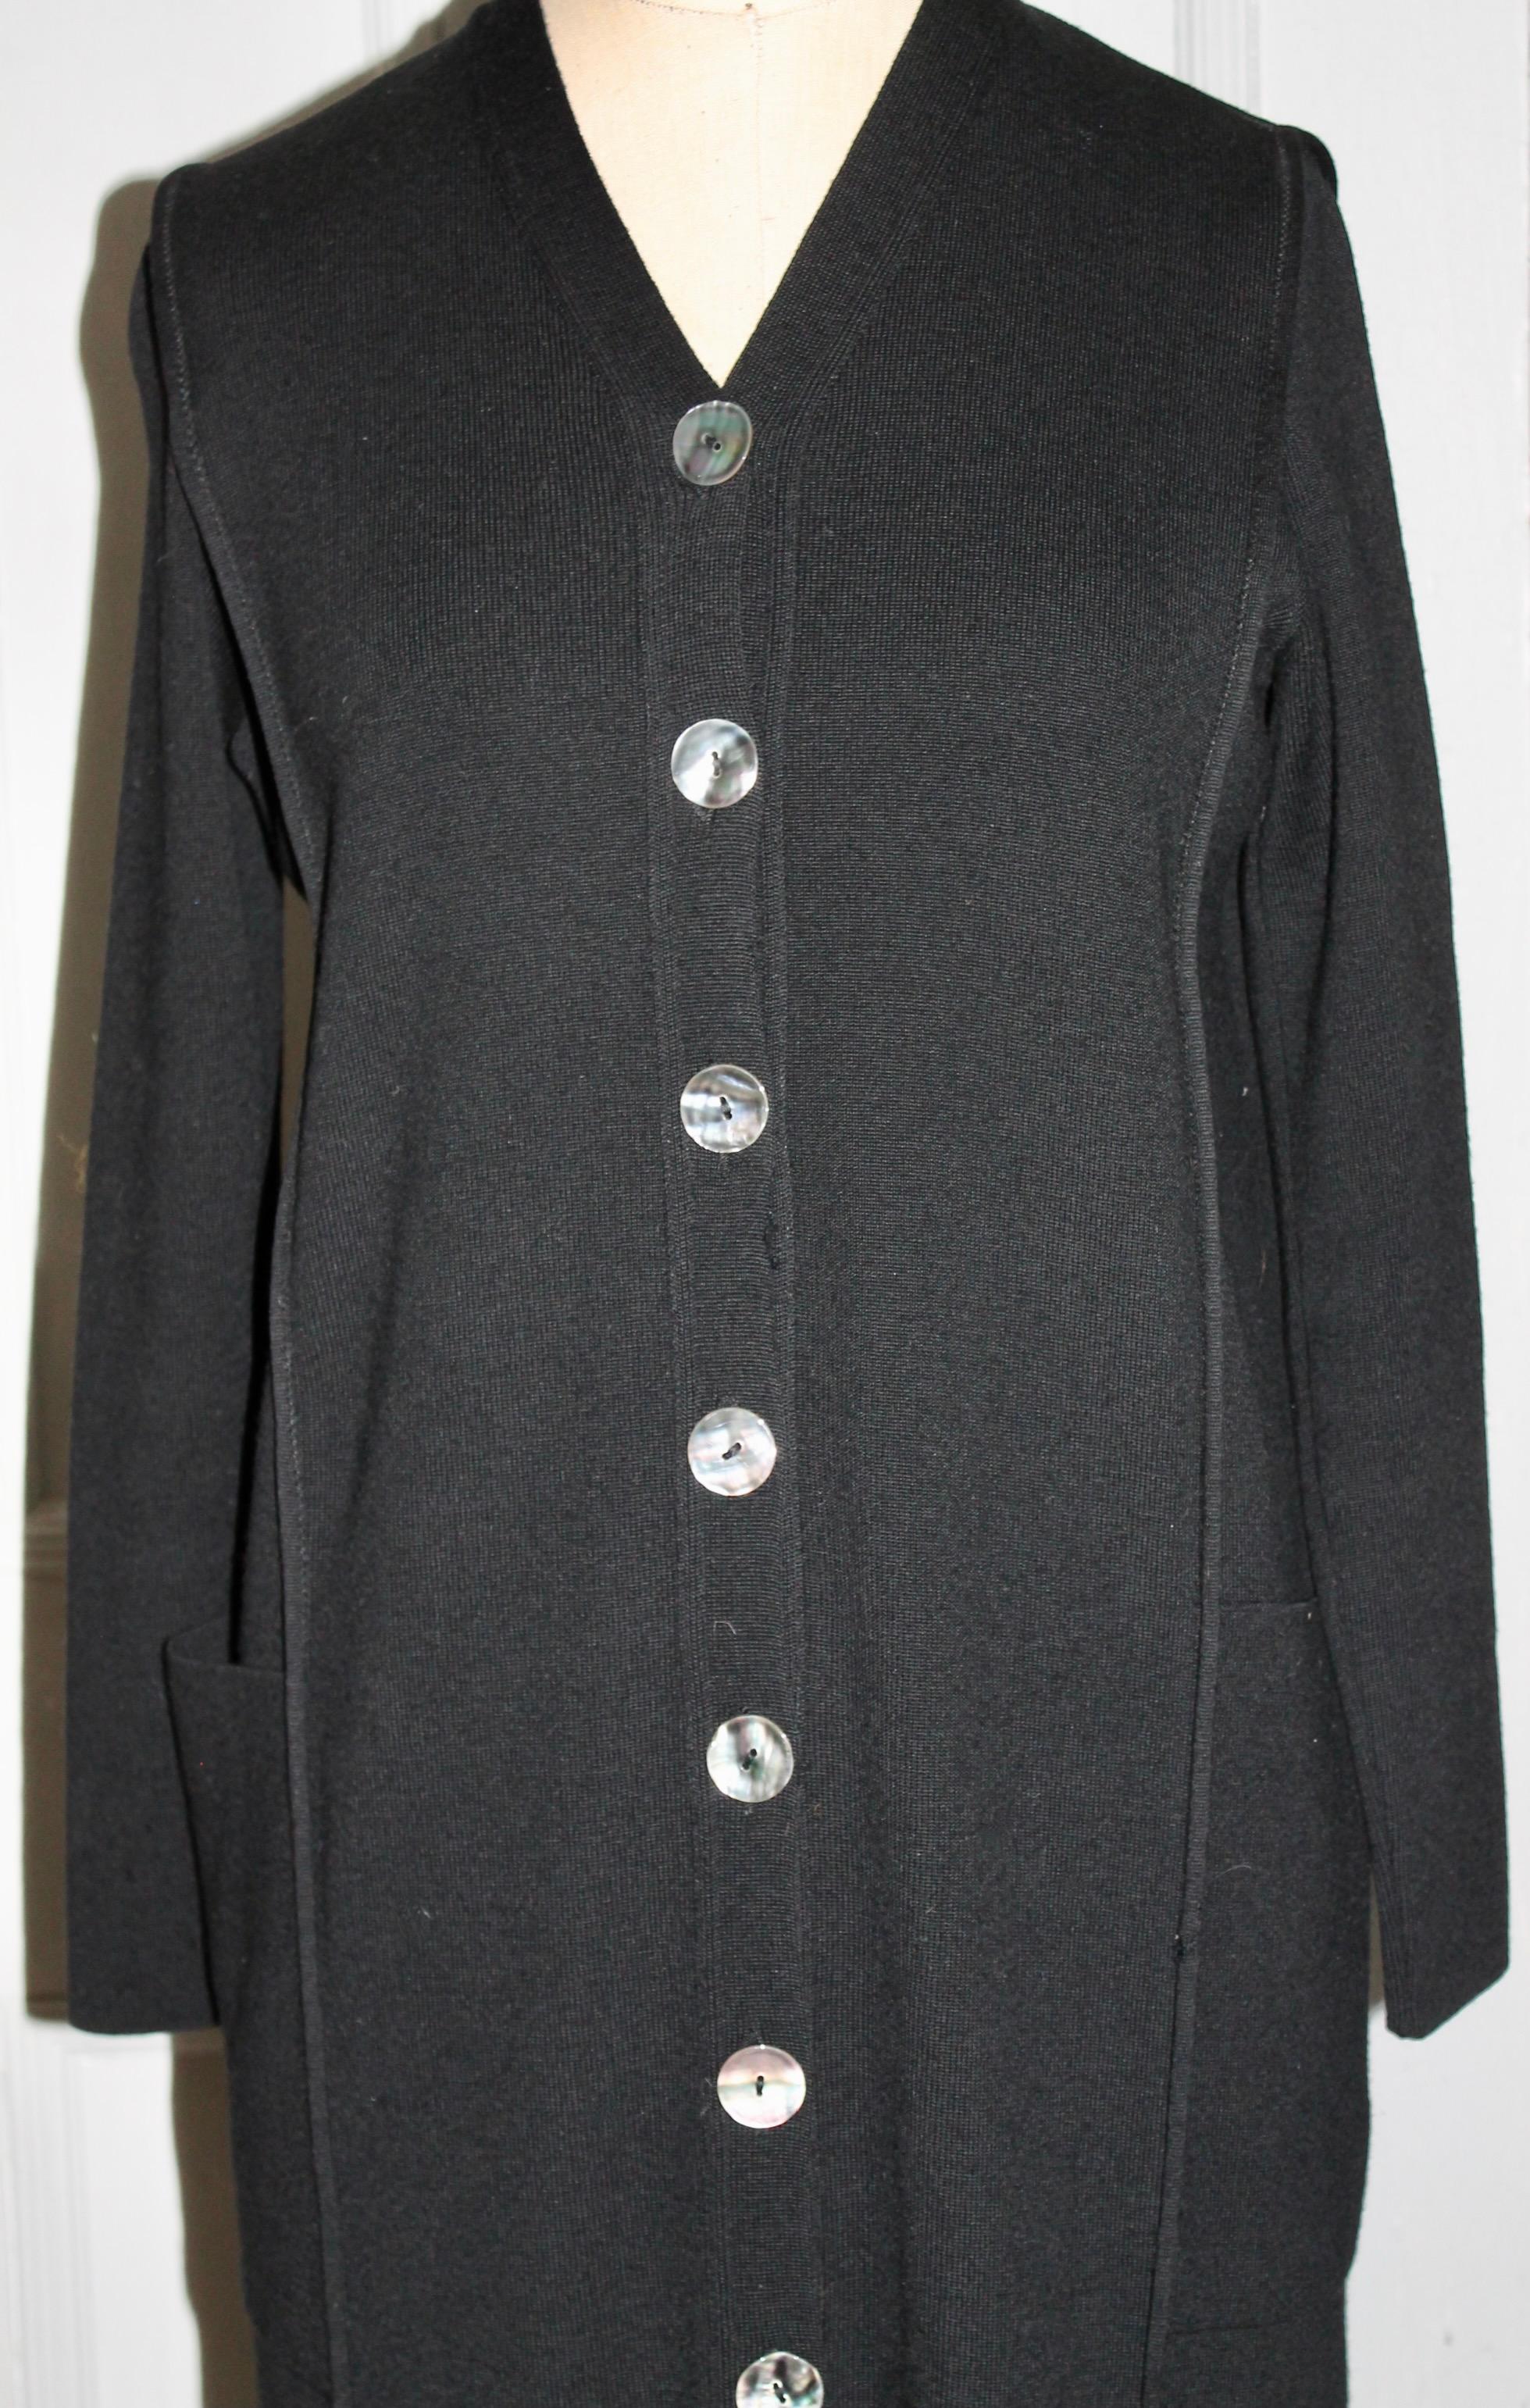 Longue robe de jour noire 100% laine. Manches longues, boutons blancs sur le devant et deux poches sur le devant.
Taille : moyenne.